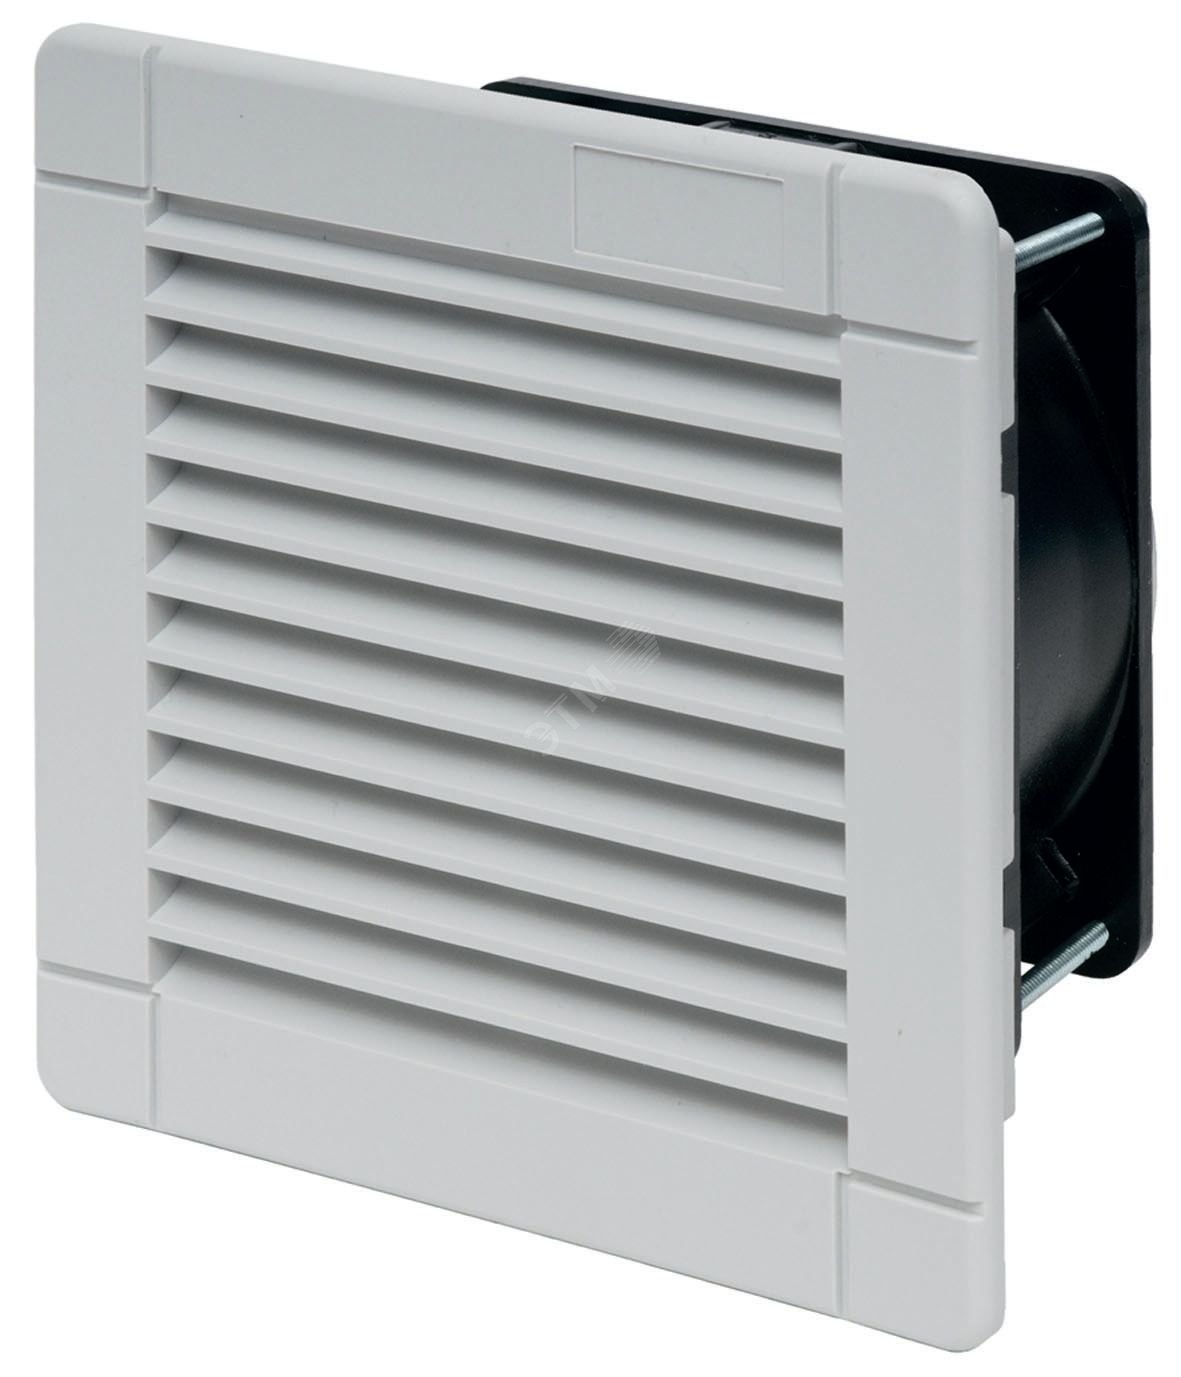 Вентилятор с фильтром стандартная версия питание 120В АС расход воздуха 100м3/ч IP54 7F5081203100 FINDER